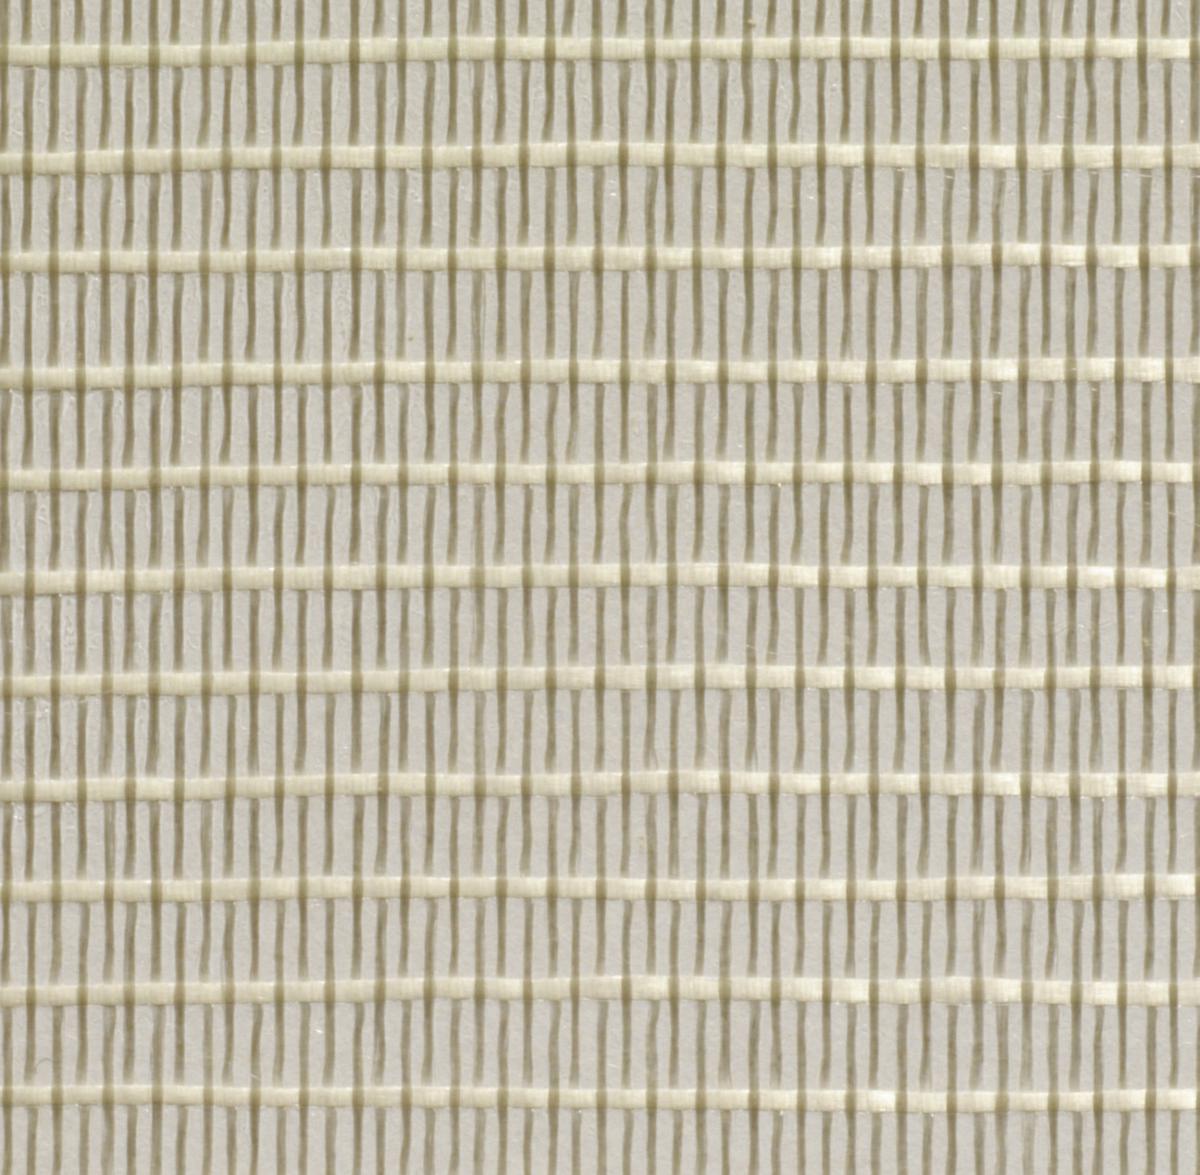 Raja Filamentband längs und quer verstärkt, Länge x Breite 50 m x 50 mm Detail 2 ZOOM